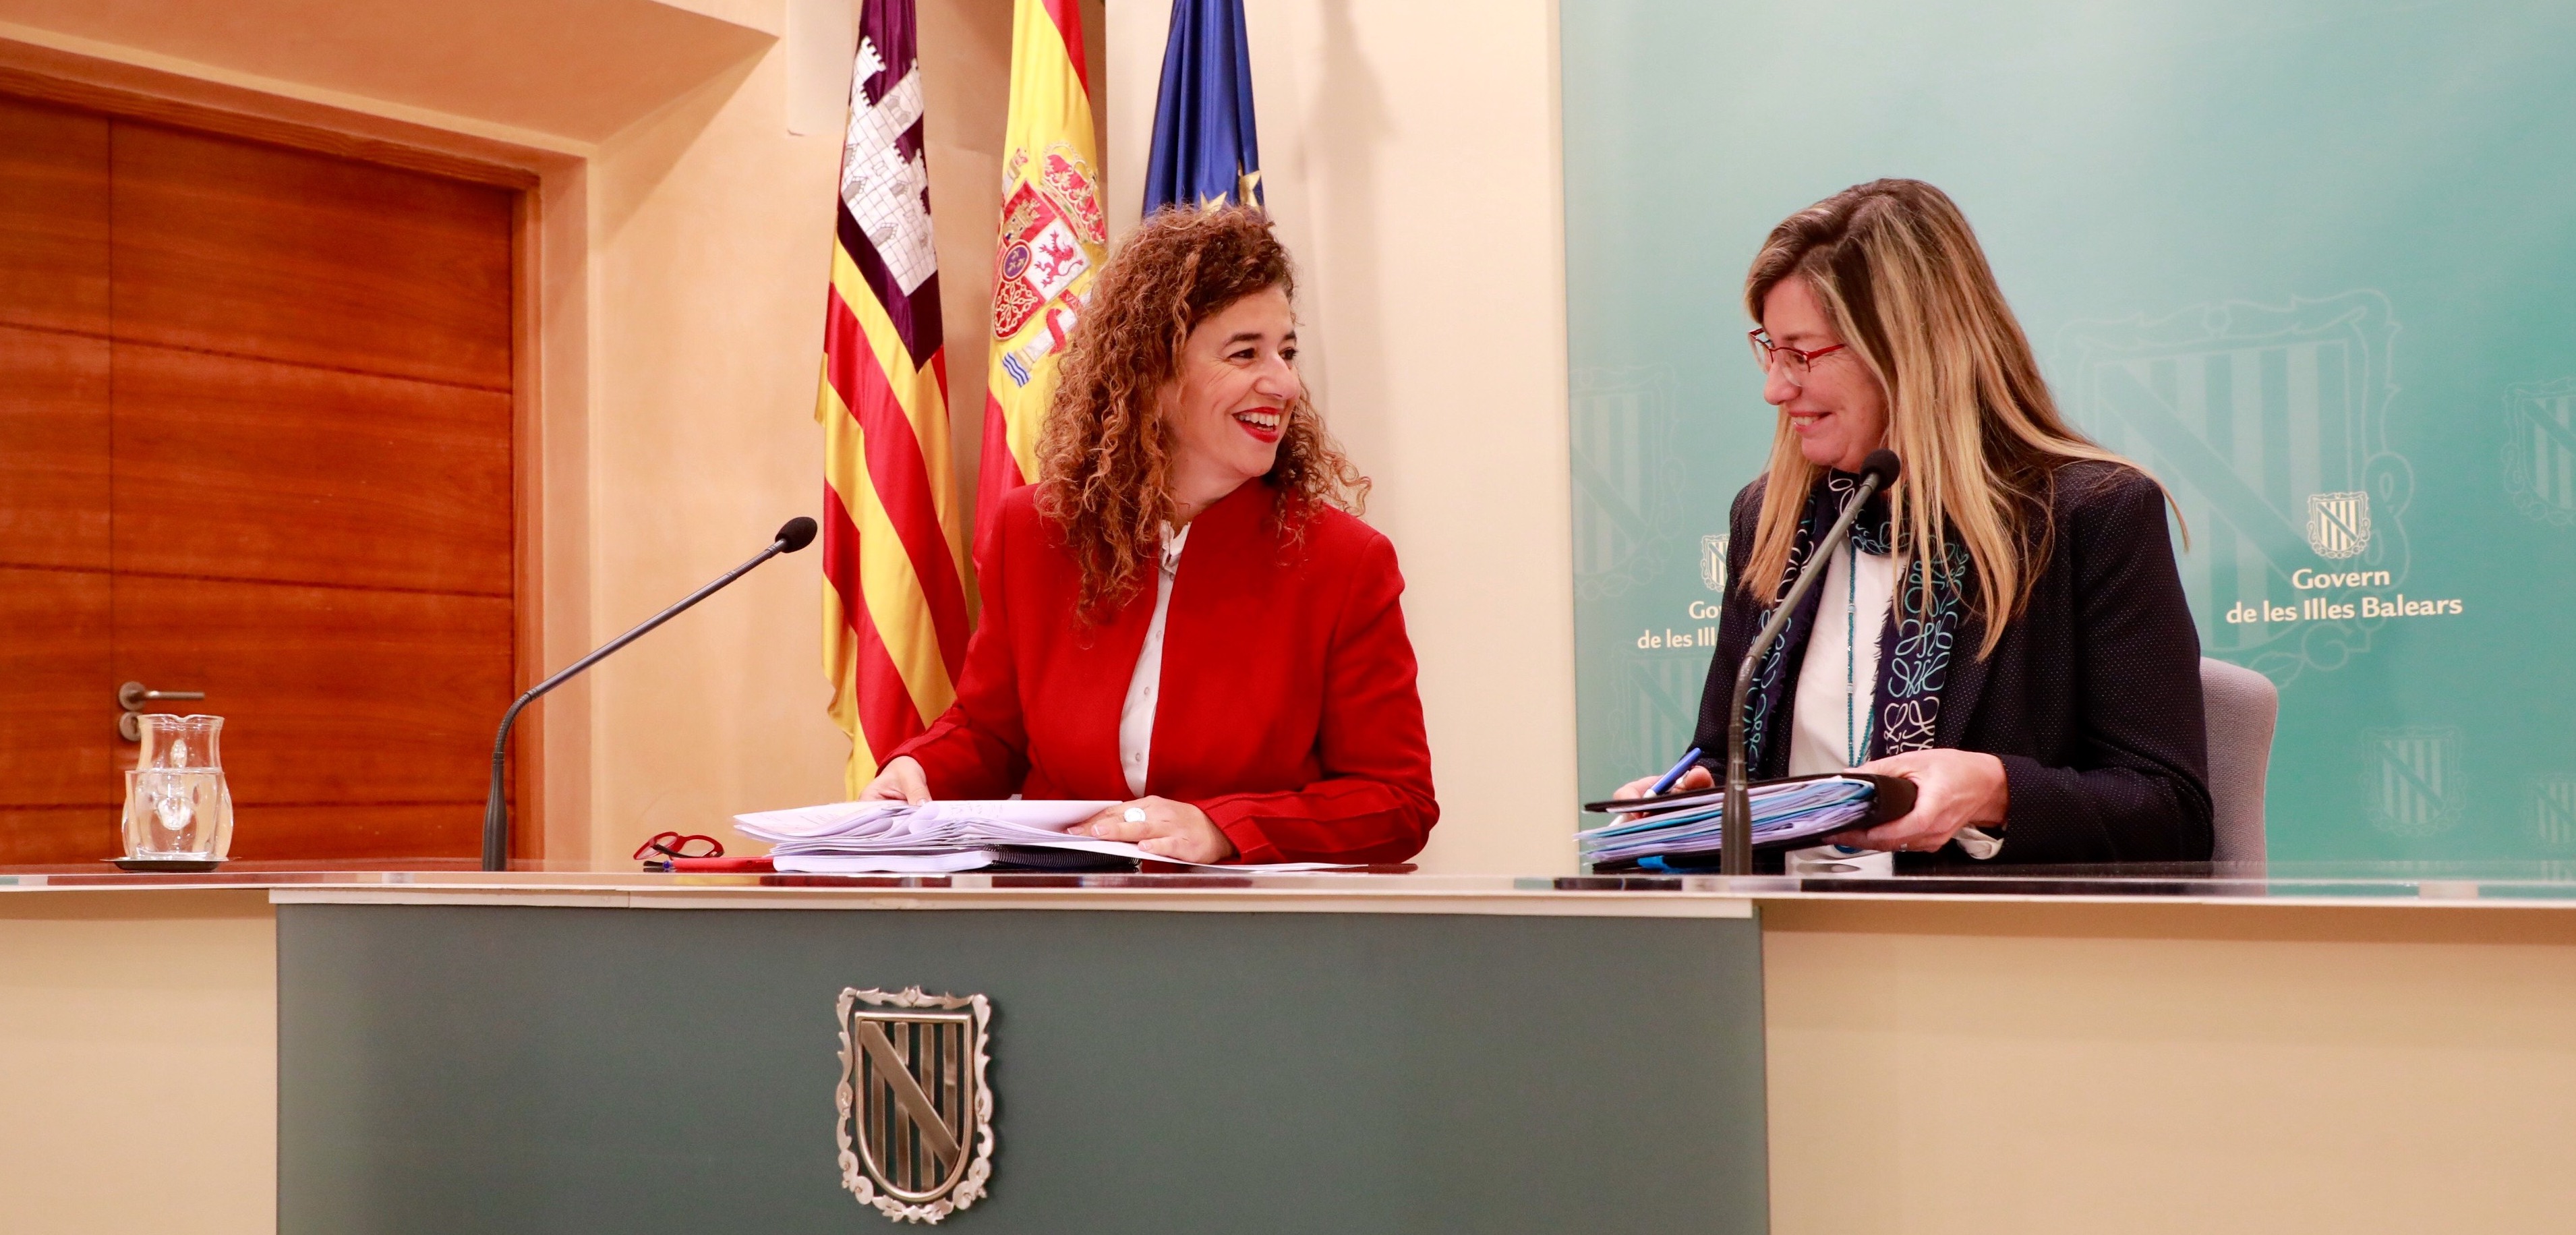 Aprobado el decreto que regula la capacitación lingüística del personal estatutario del Servicio de Salud de las Illes Balears